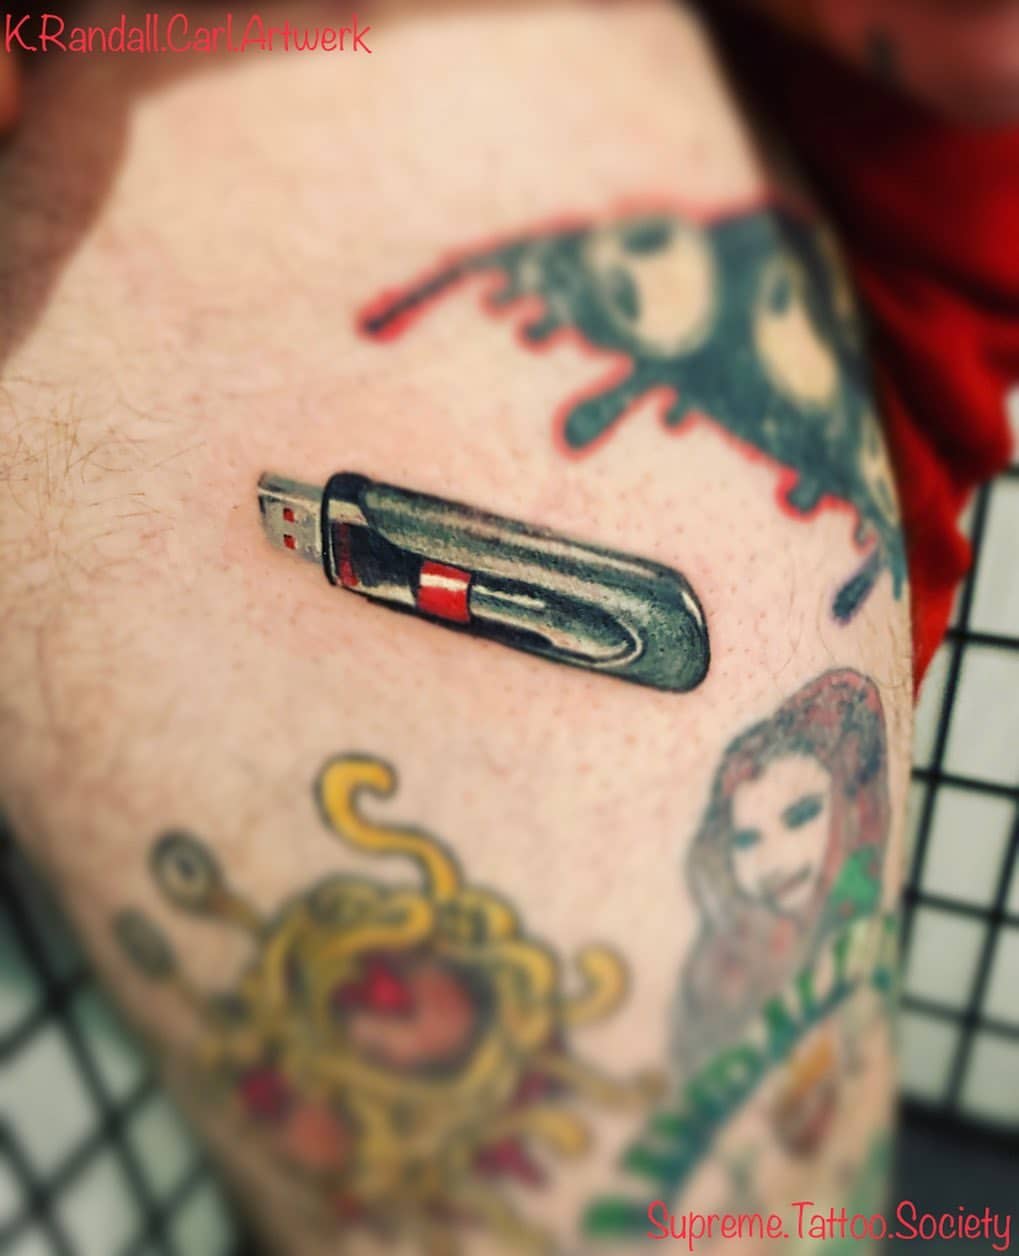 Flash drive tattoo.